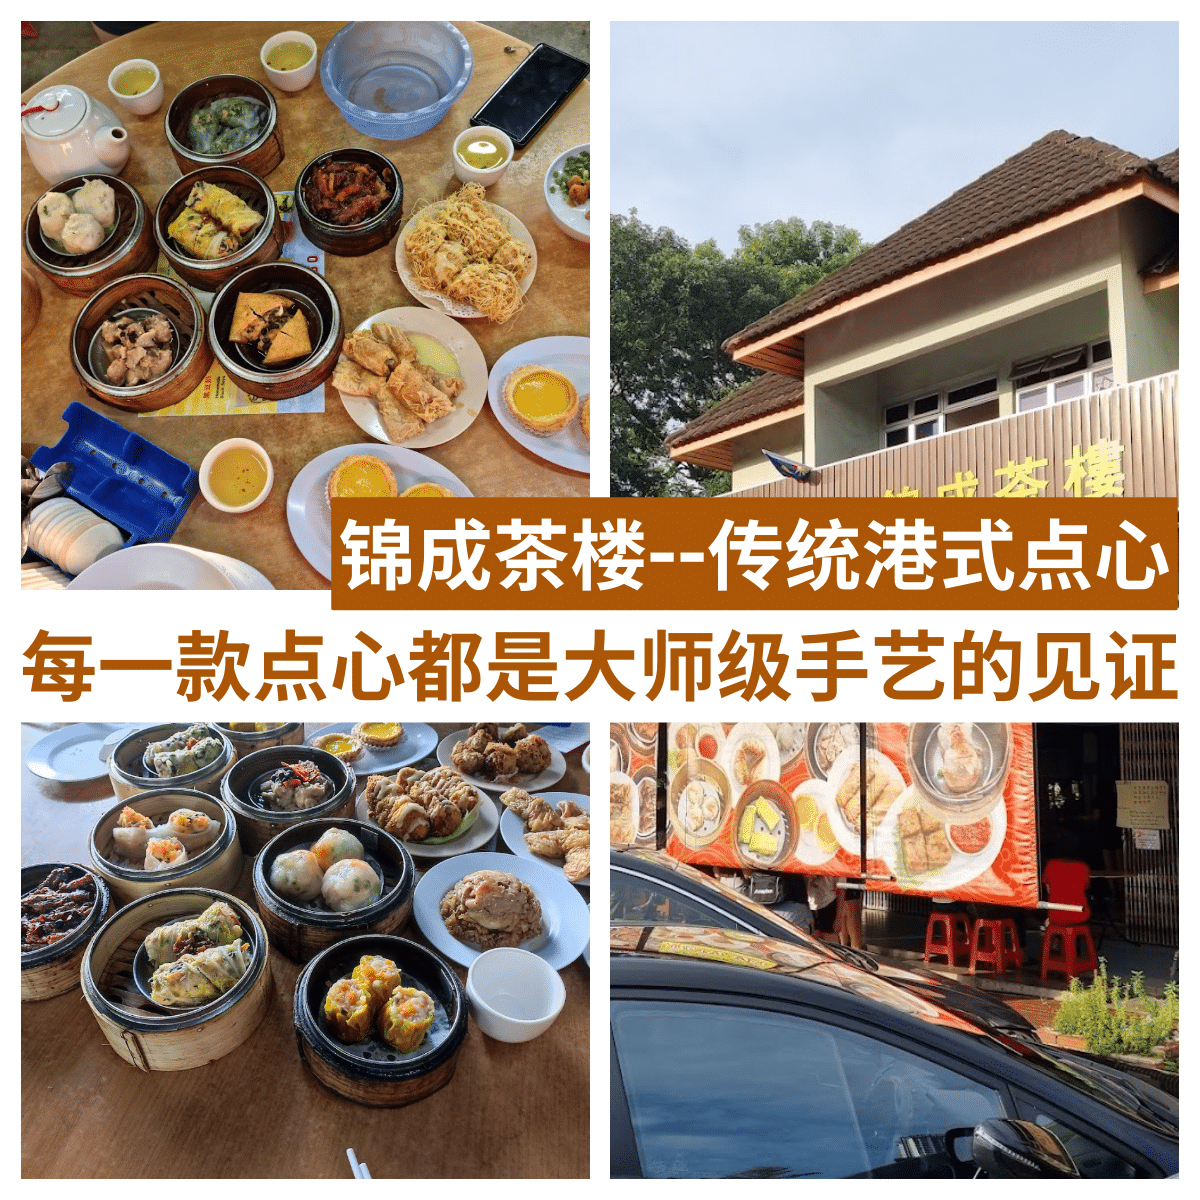 ” 锦成茶楼 ：品尝顶级香港大厨的经典港式点心，福林园地区的美味地标！”